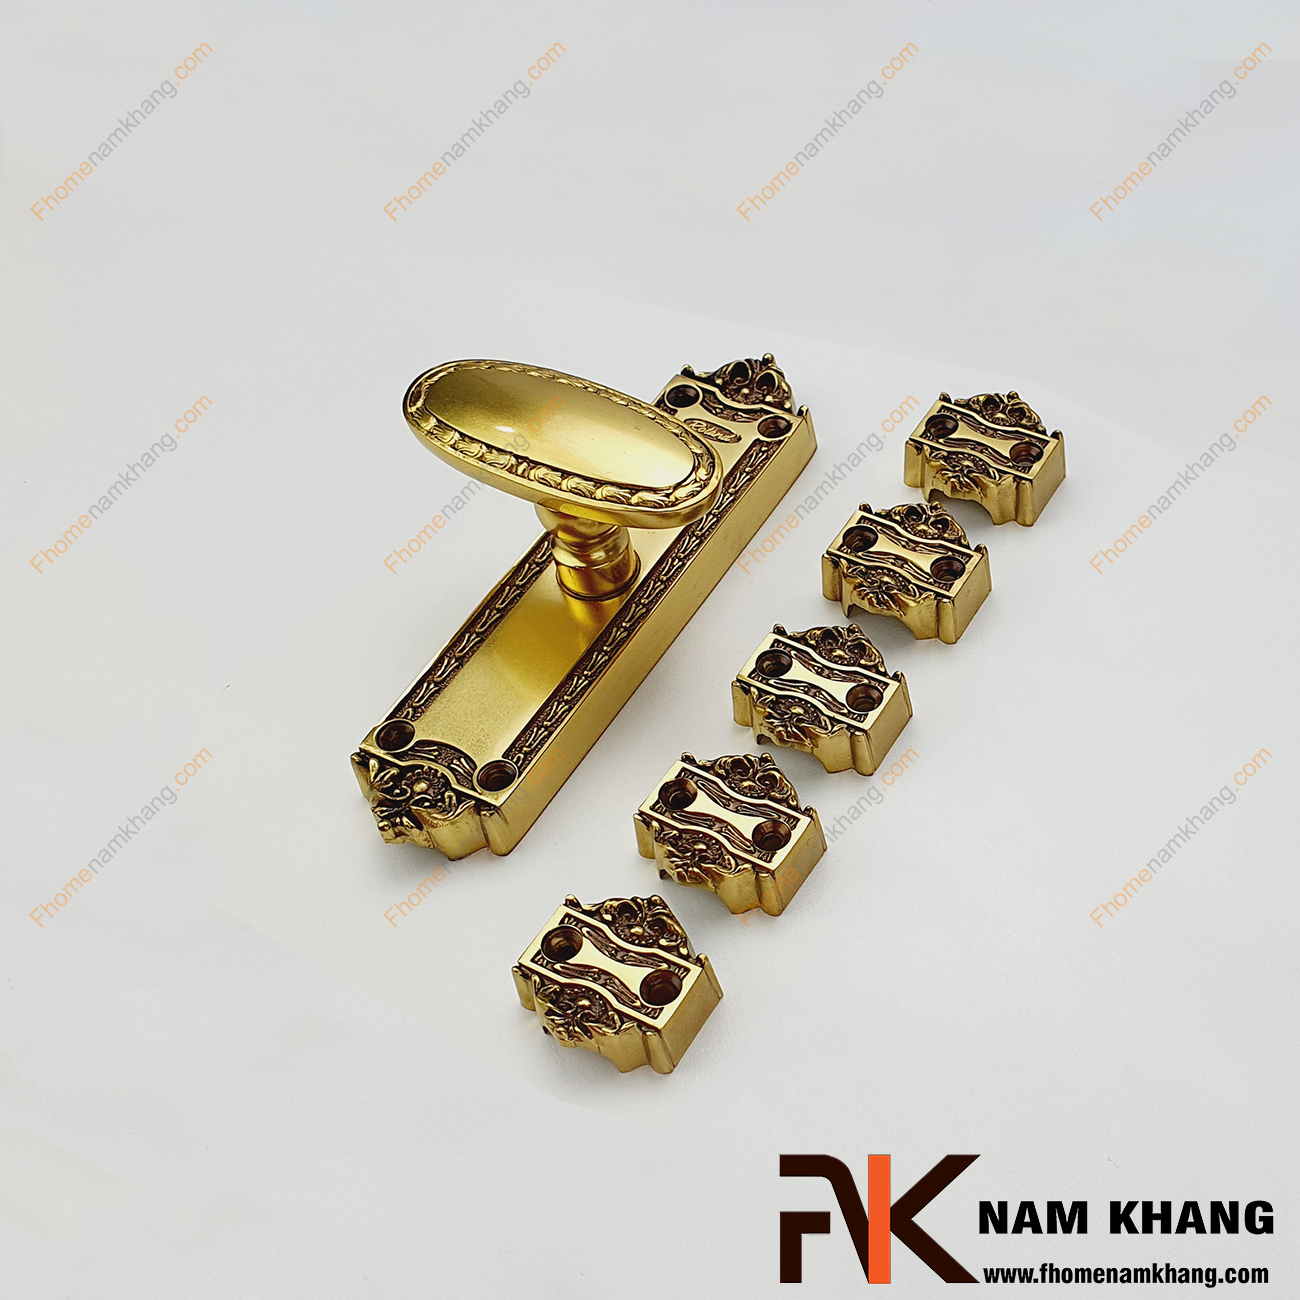 Chốt cửa Clemon bằng đồng cao cấp màu đồng vàng NK187RH-OR được hoàn thiện từ đồng với vẻ ngoài cứng cáp, chắc chắn và có khả năng chống oxi hóa, ăn mòn khi sử dụng trong các điều kiện thời tiết khắc nghiệt.